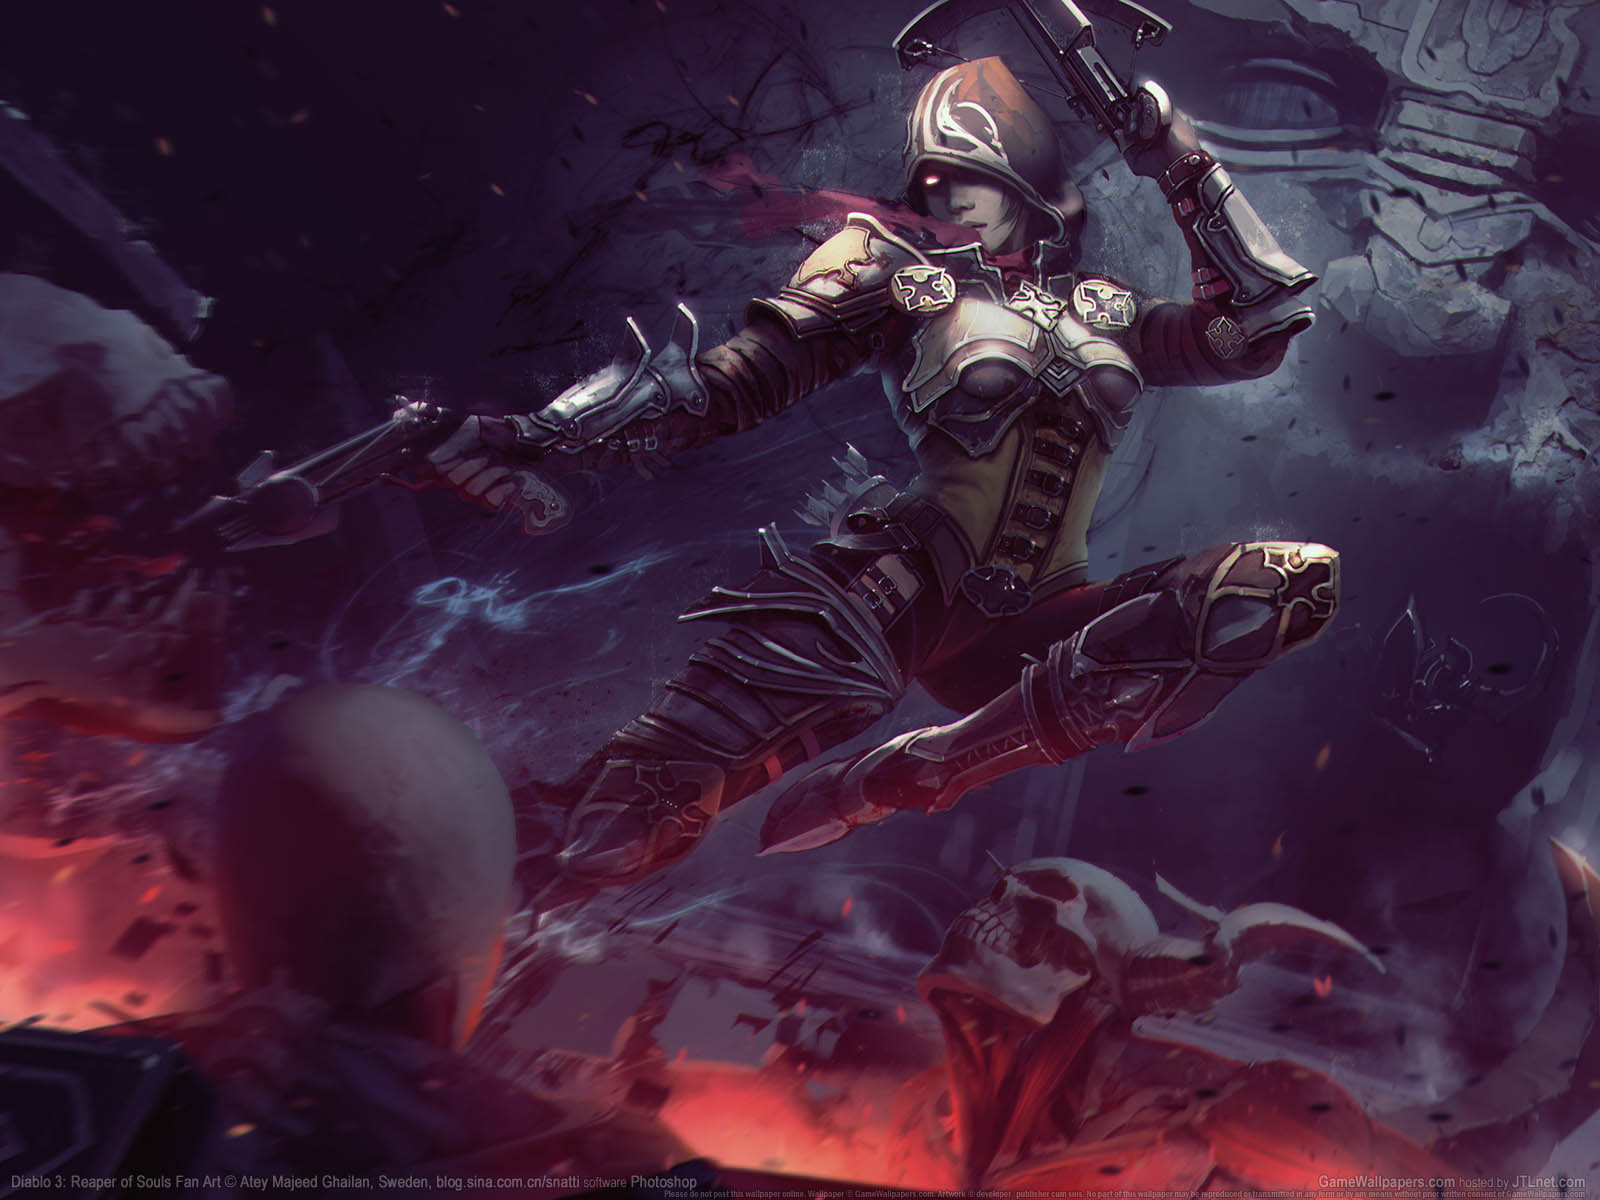 Diablo 3: Reaper of Souls Fan Art fond d'cran 03 1600x1200